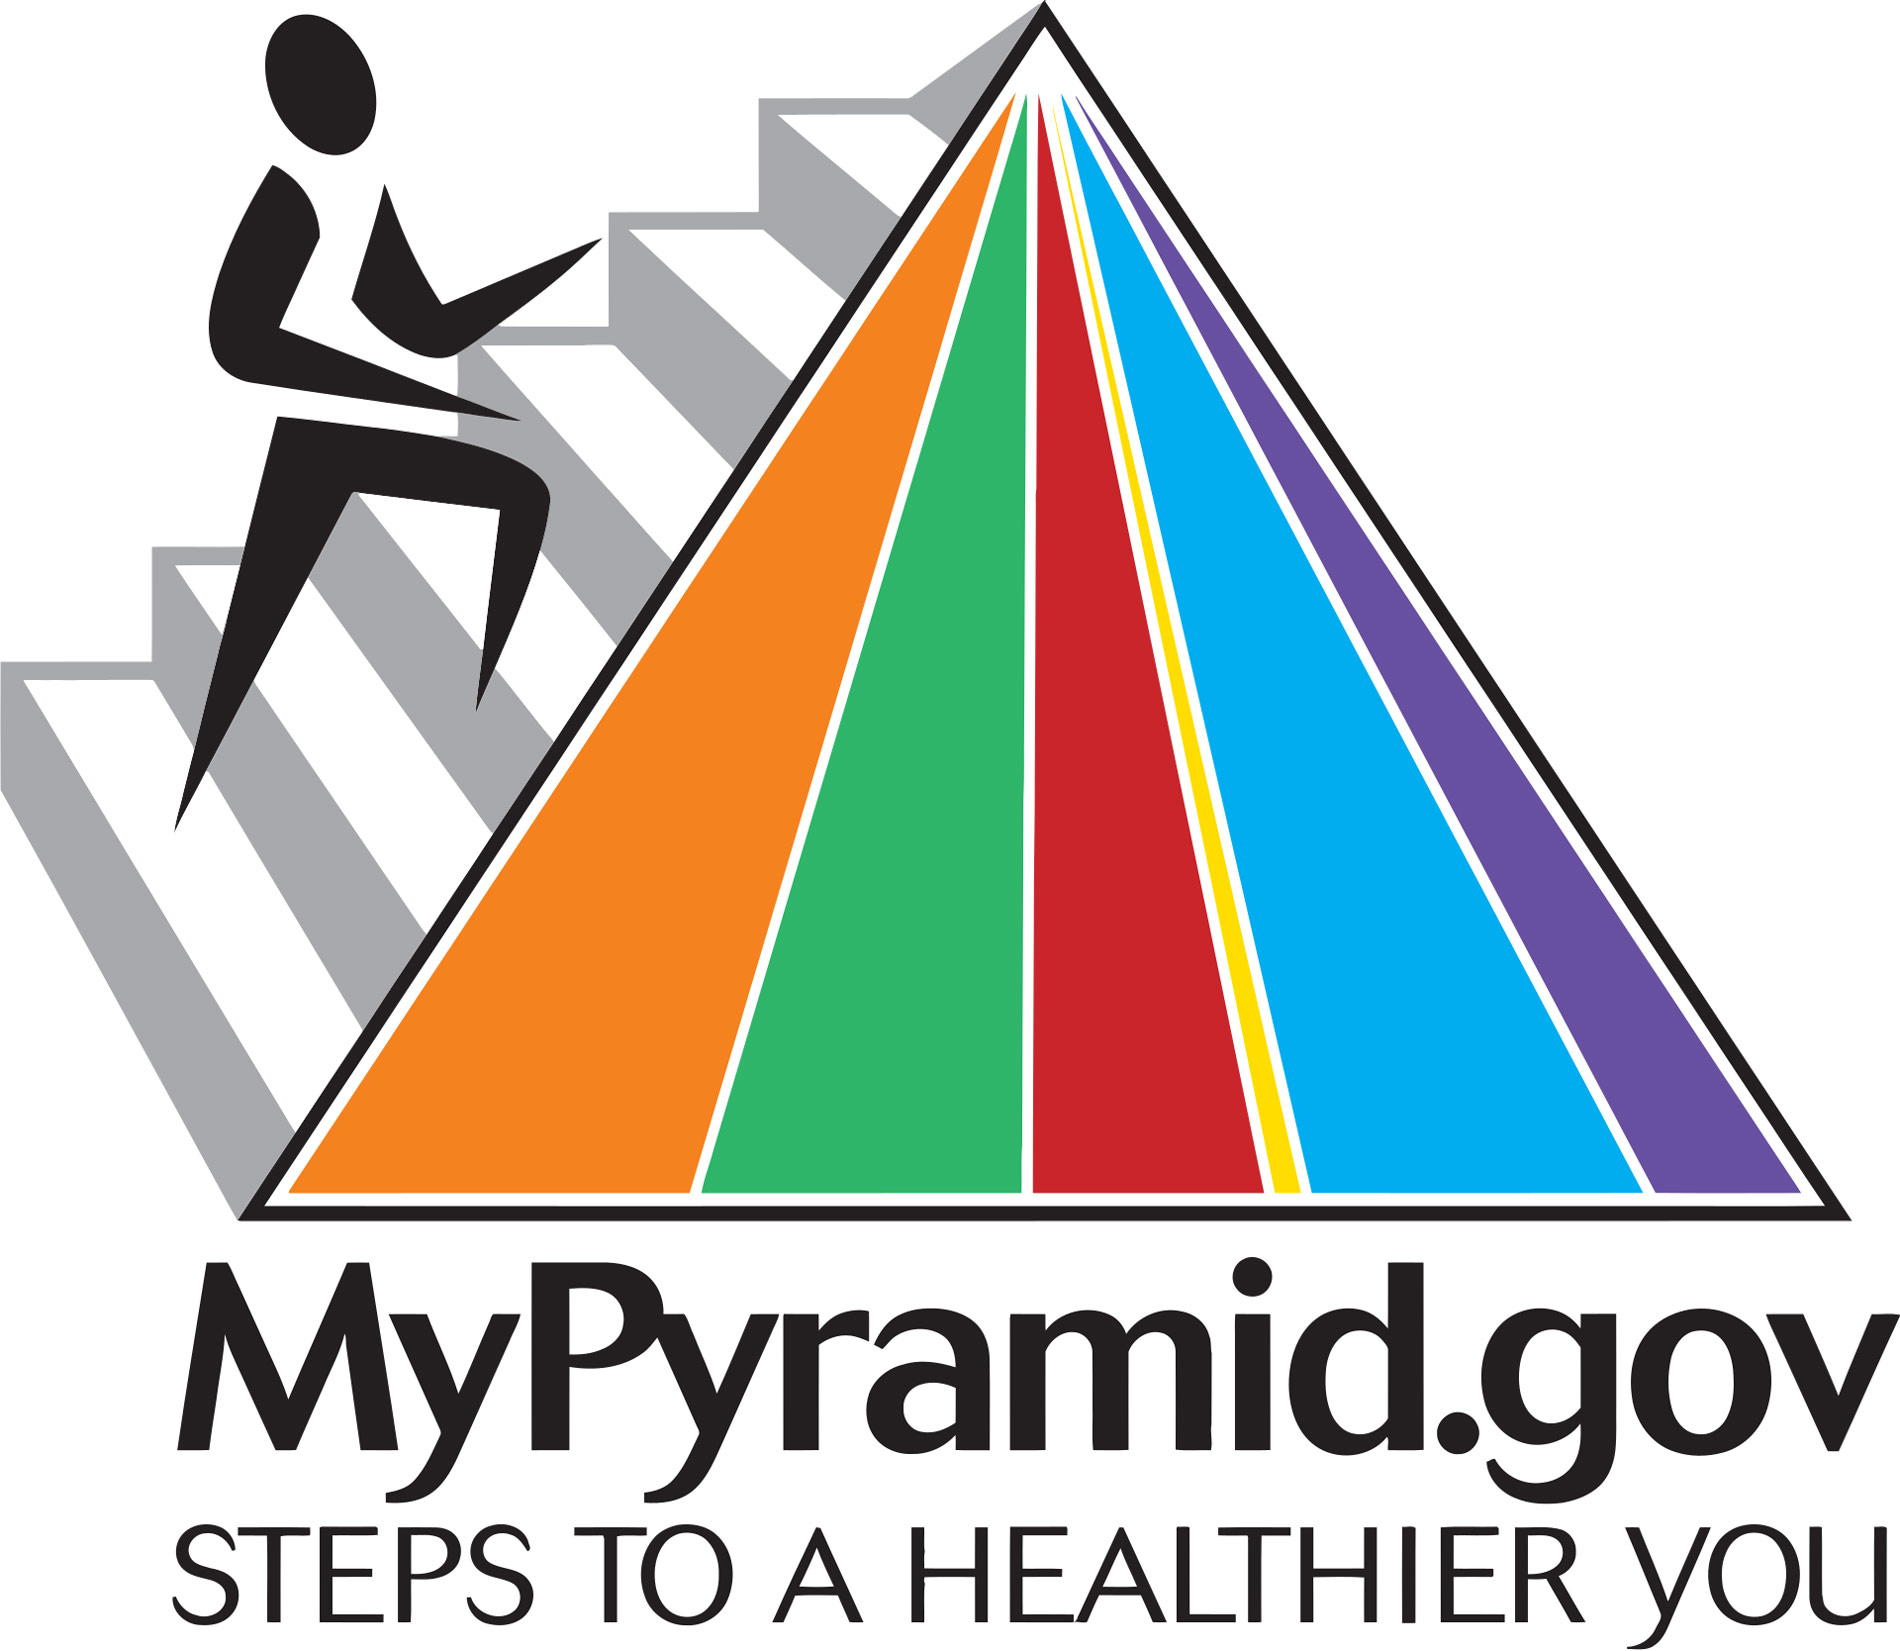 לוגו של מיי פירמיד - איש עולה במדרגות של פירמידה צבעונית